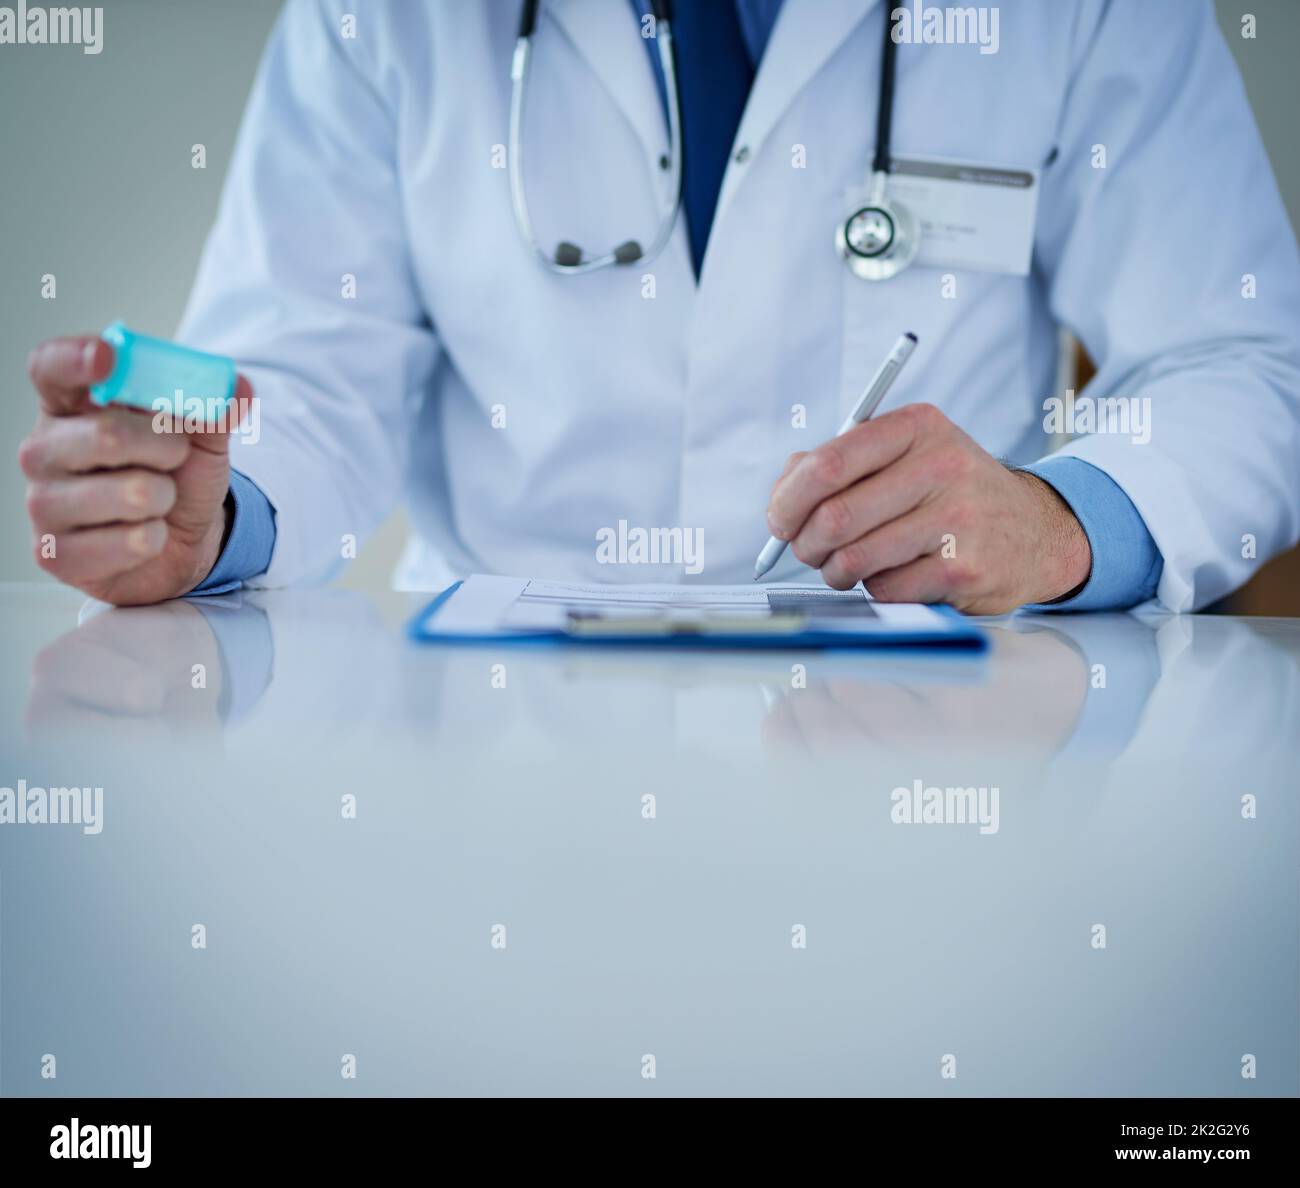 Verfolgen Sie Ihre Gesundheit. Nahaufnahme eines nicht erkennbaren Arztes, der Notizen schreibt, während er eine Flasche Medikamente in der Hand hält. Stockfoto